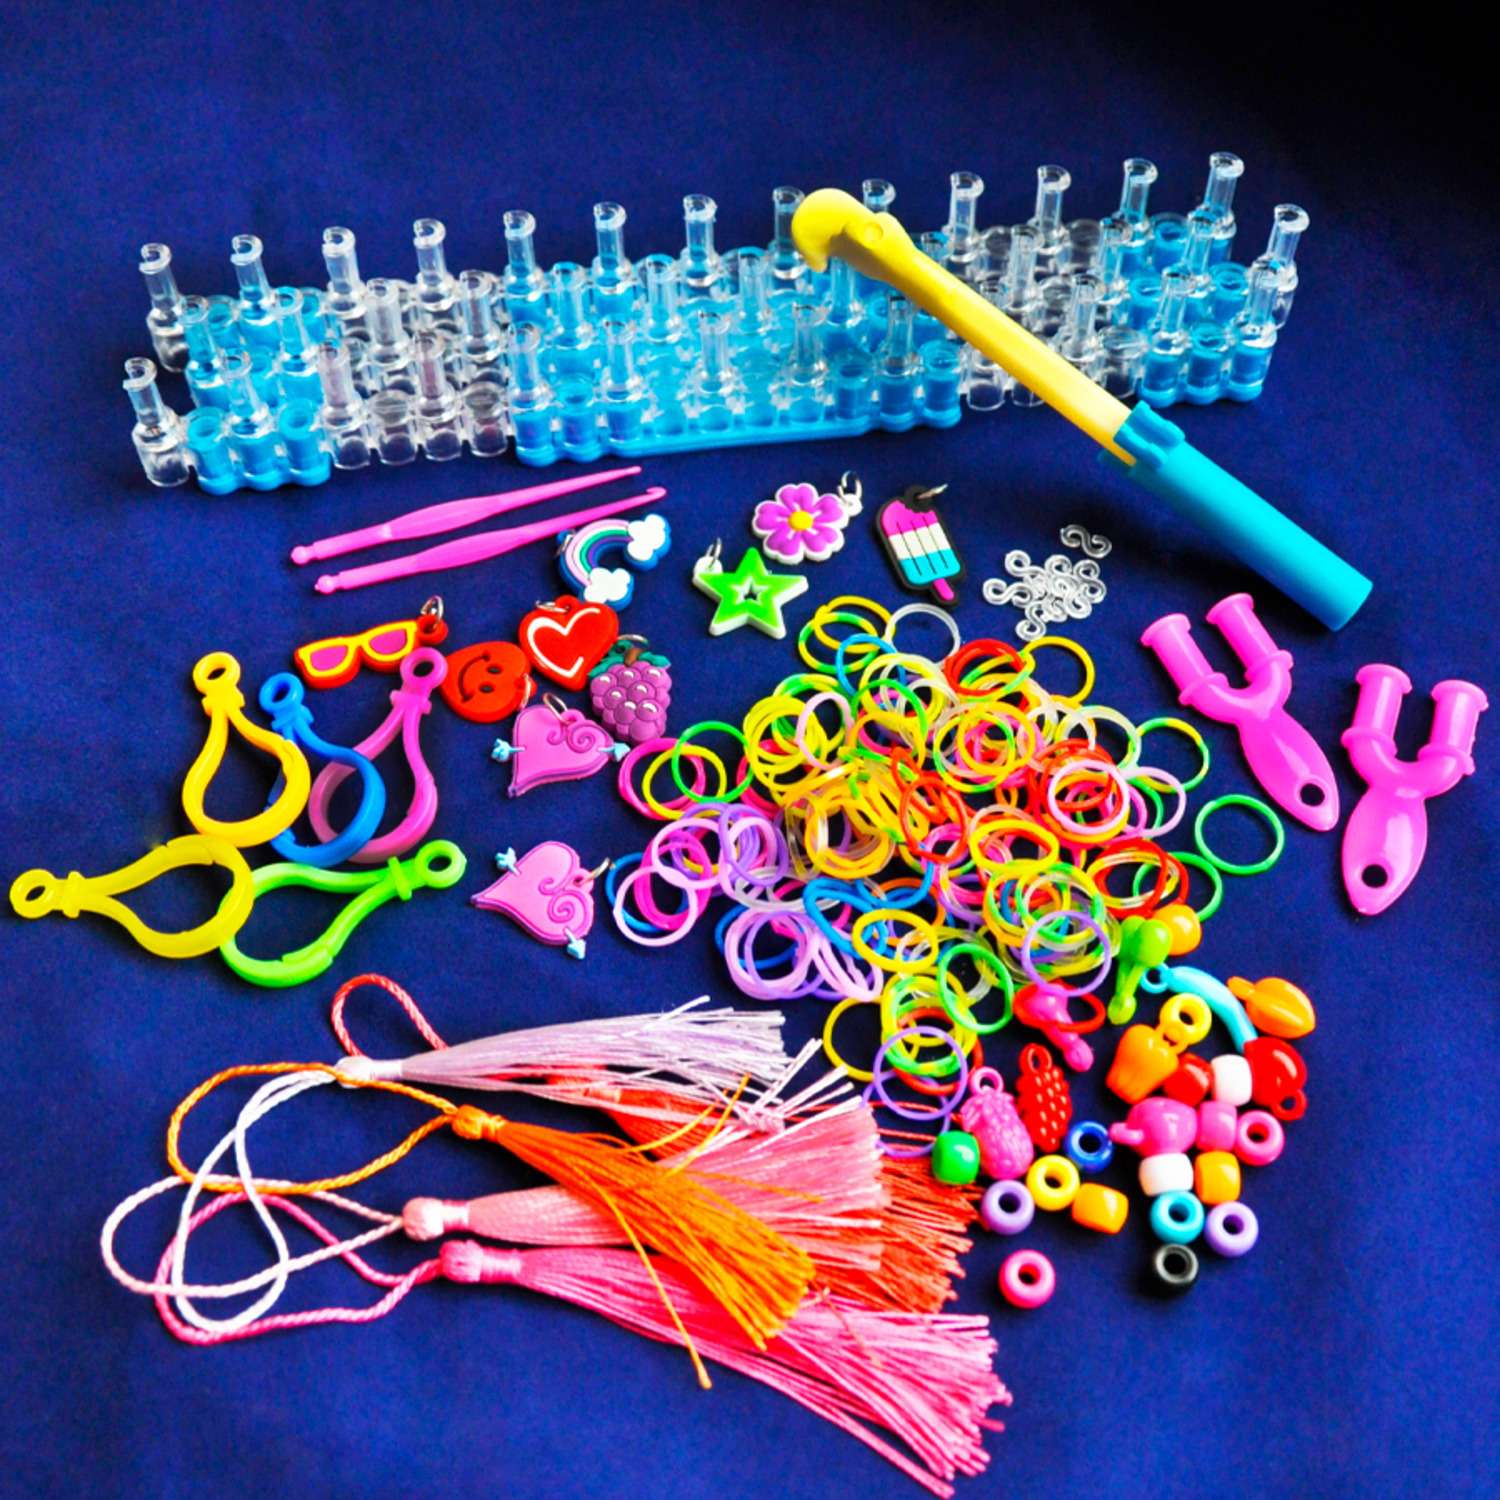 Купить недорогие наборы для плетения браслетов из резиночек Rainbow Loom bands